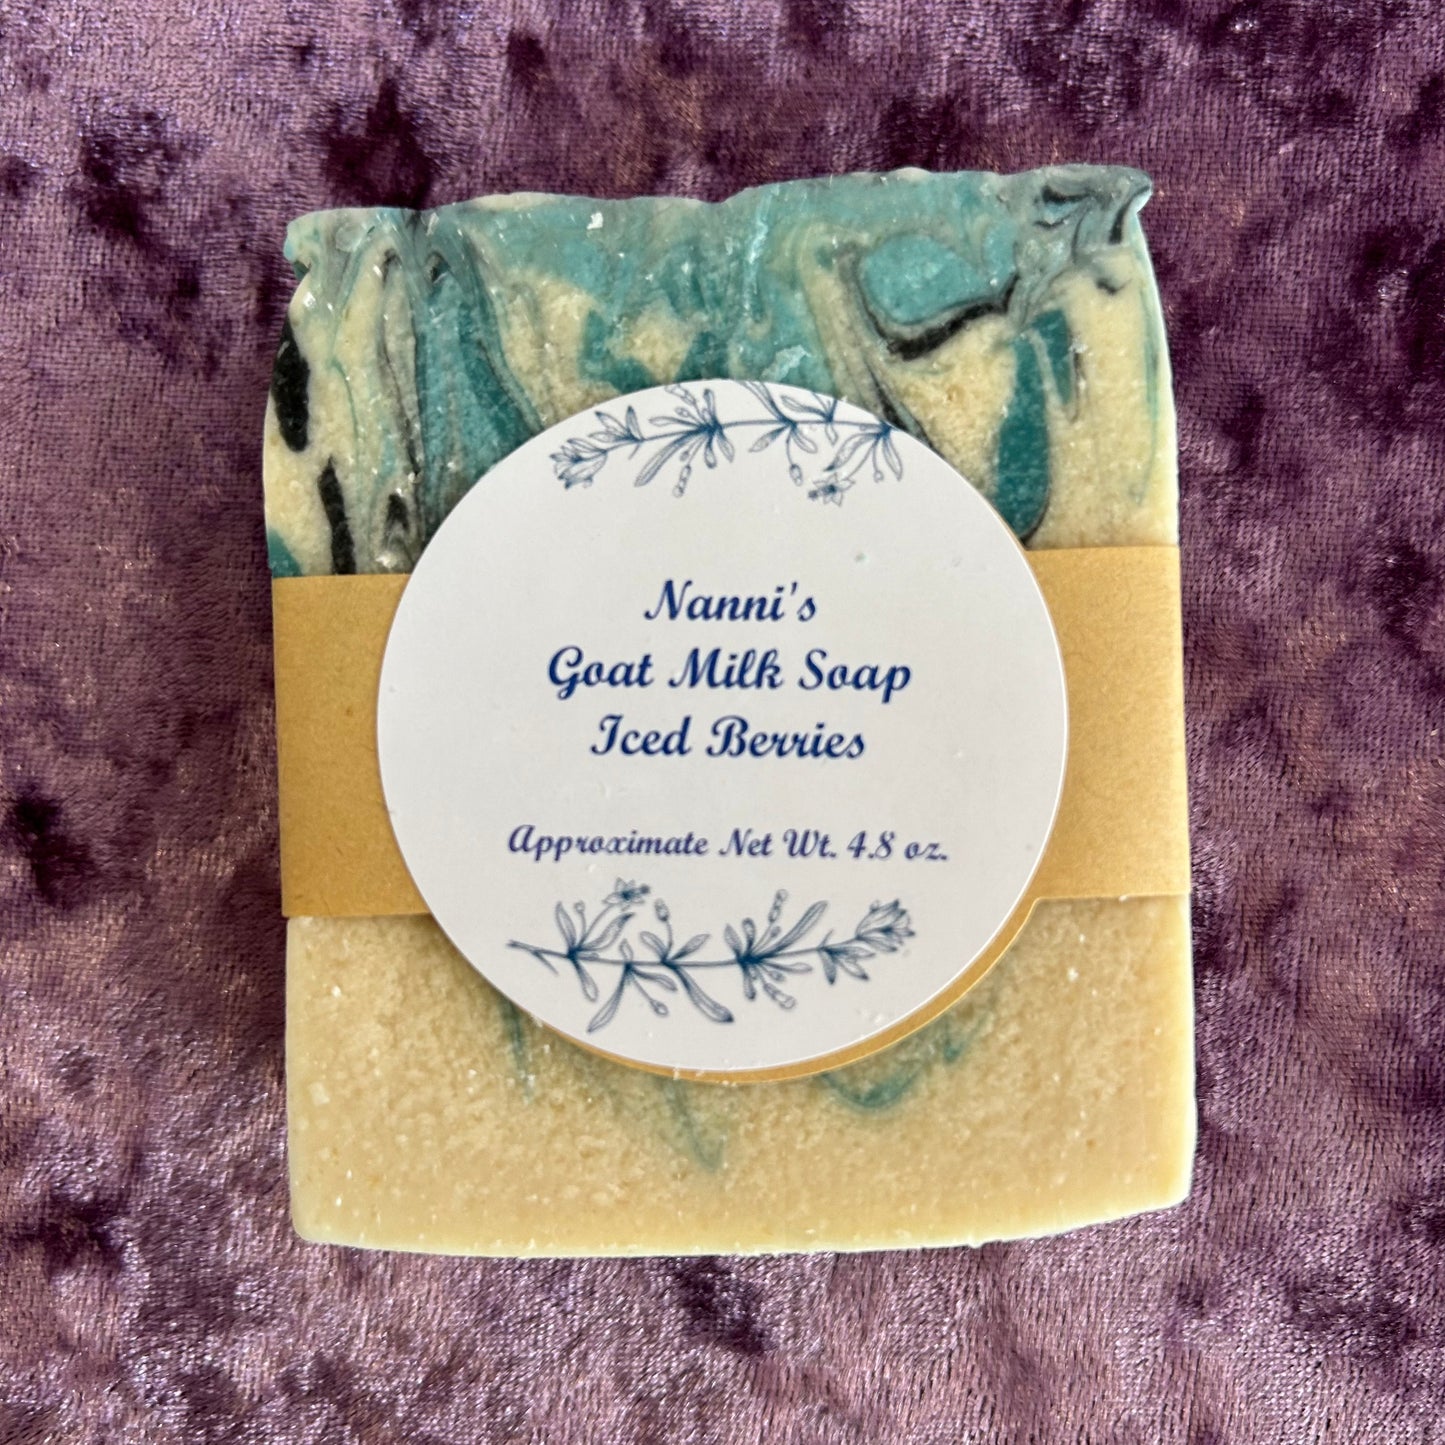 Nanni’s Goat Milk Soap